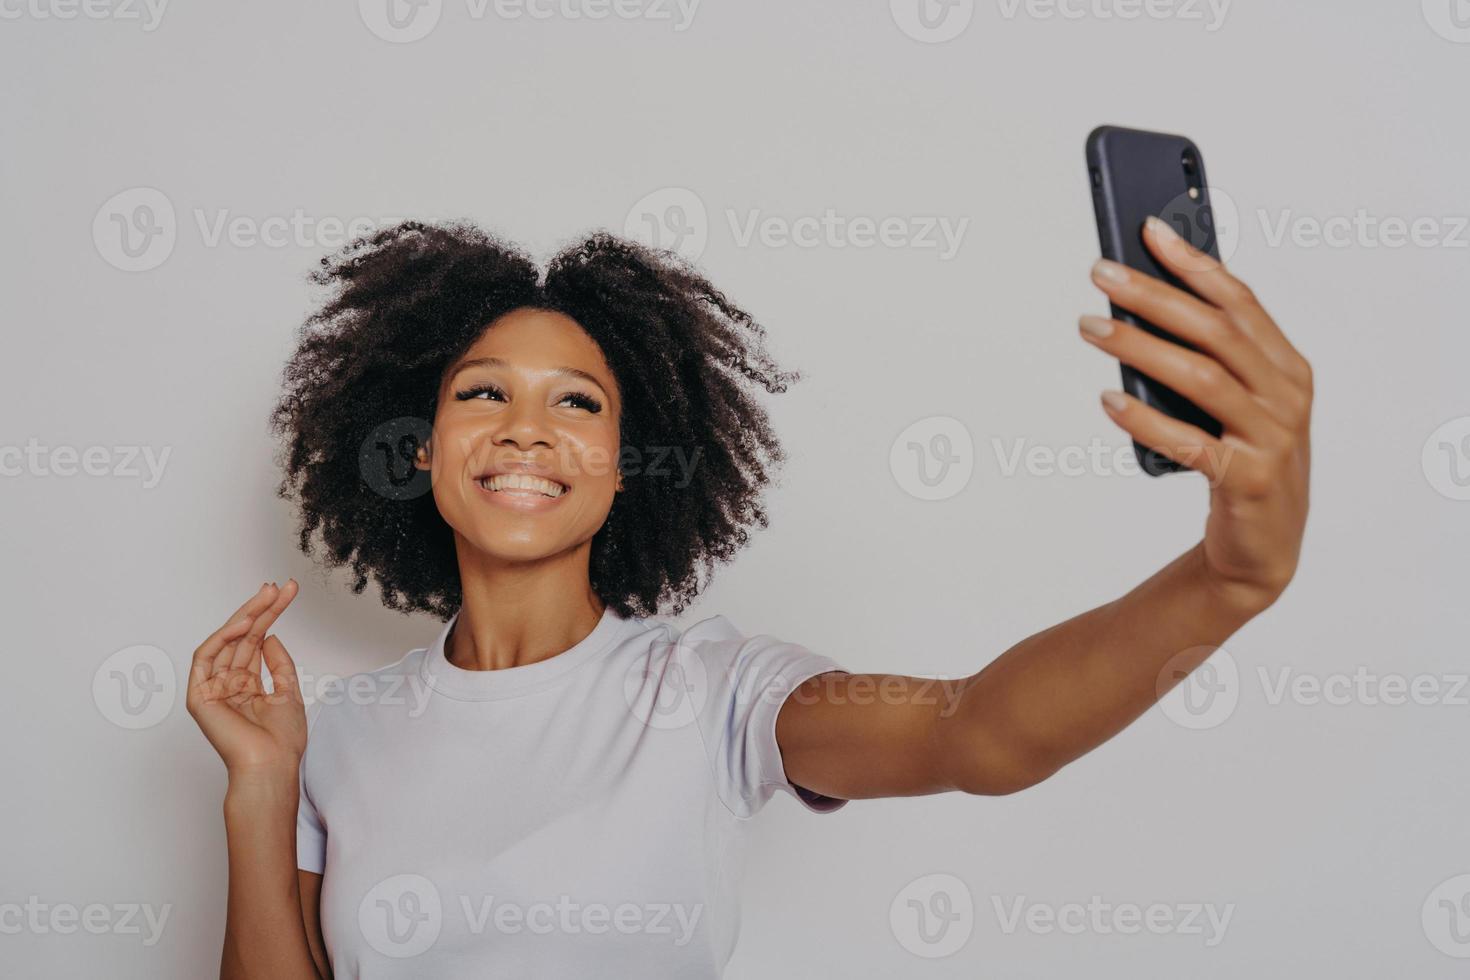 positieve vrolijke donkere vrouw die foto maakt op moderne smartphonecamera